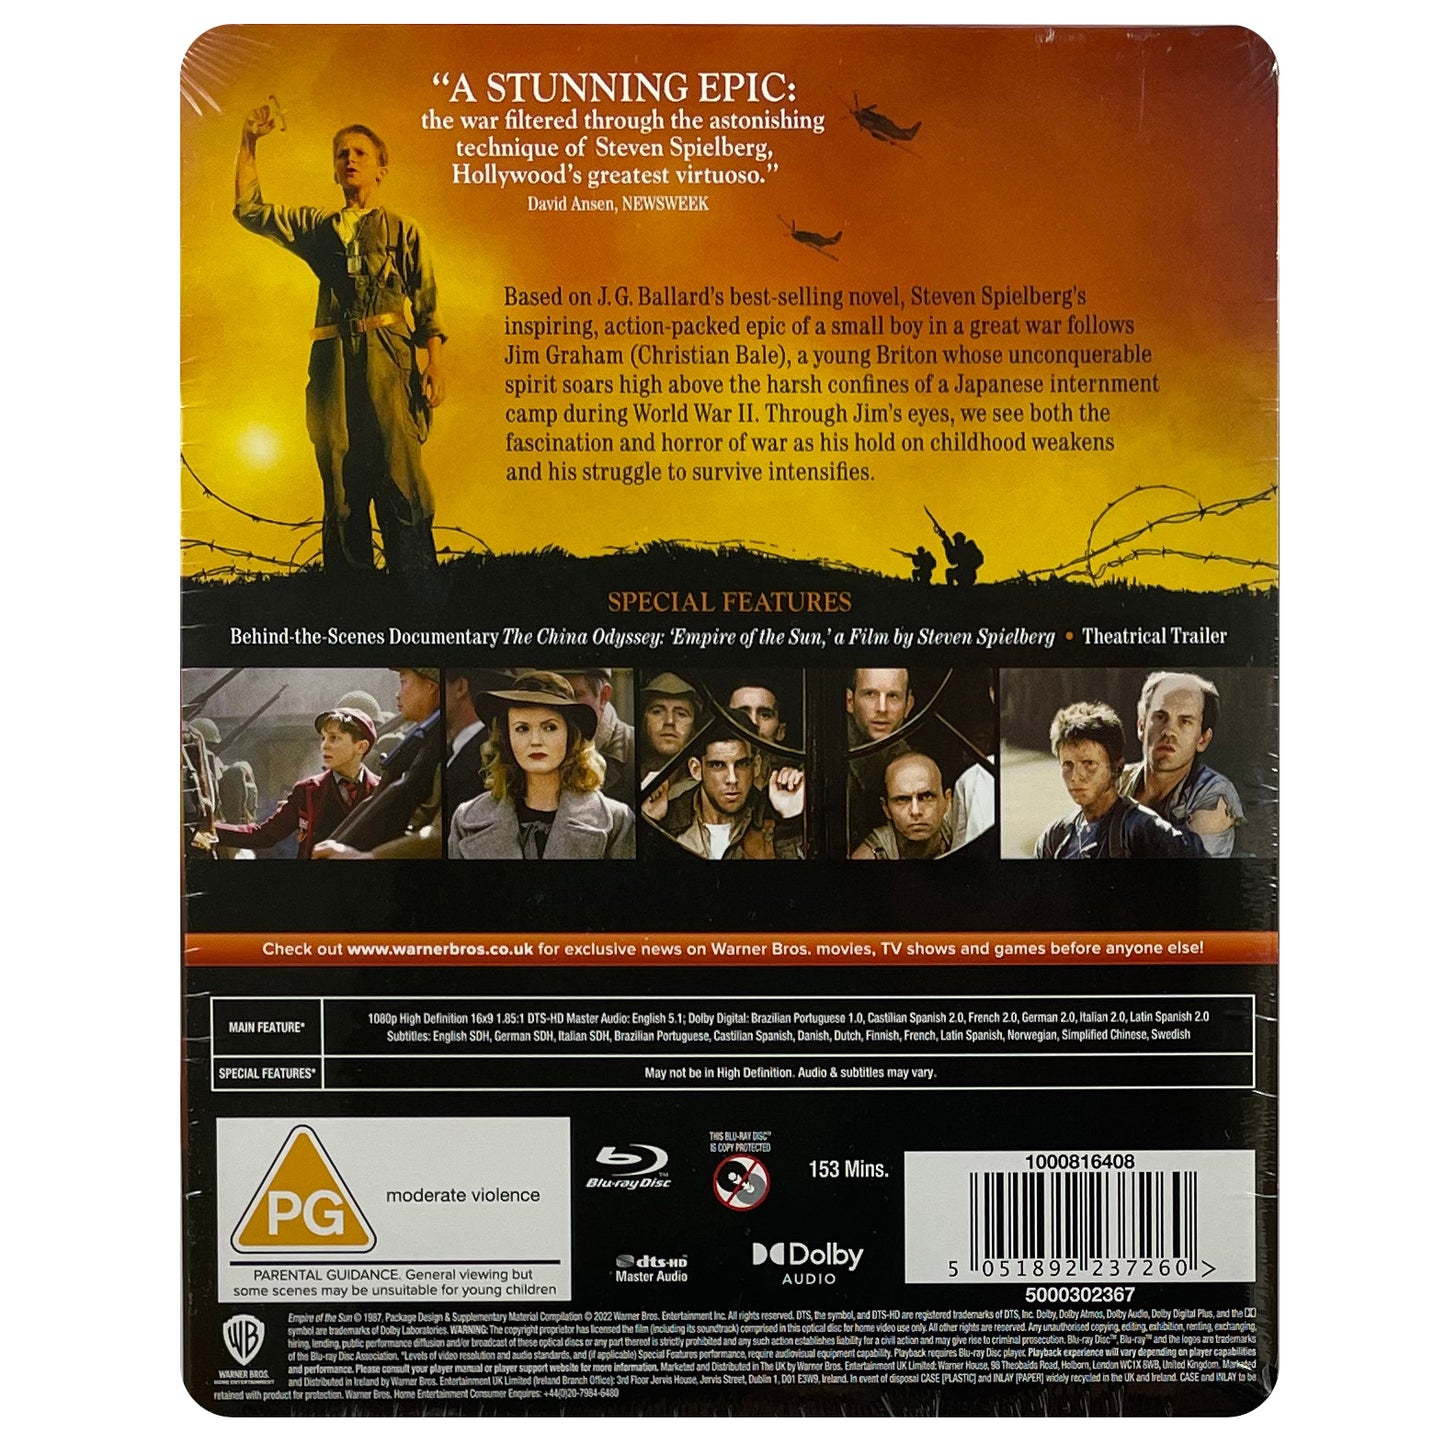 Empire of the Sun (35th Anniversary Edition) Blu-Ray Steelbook